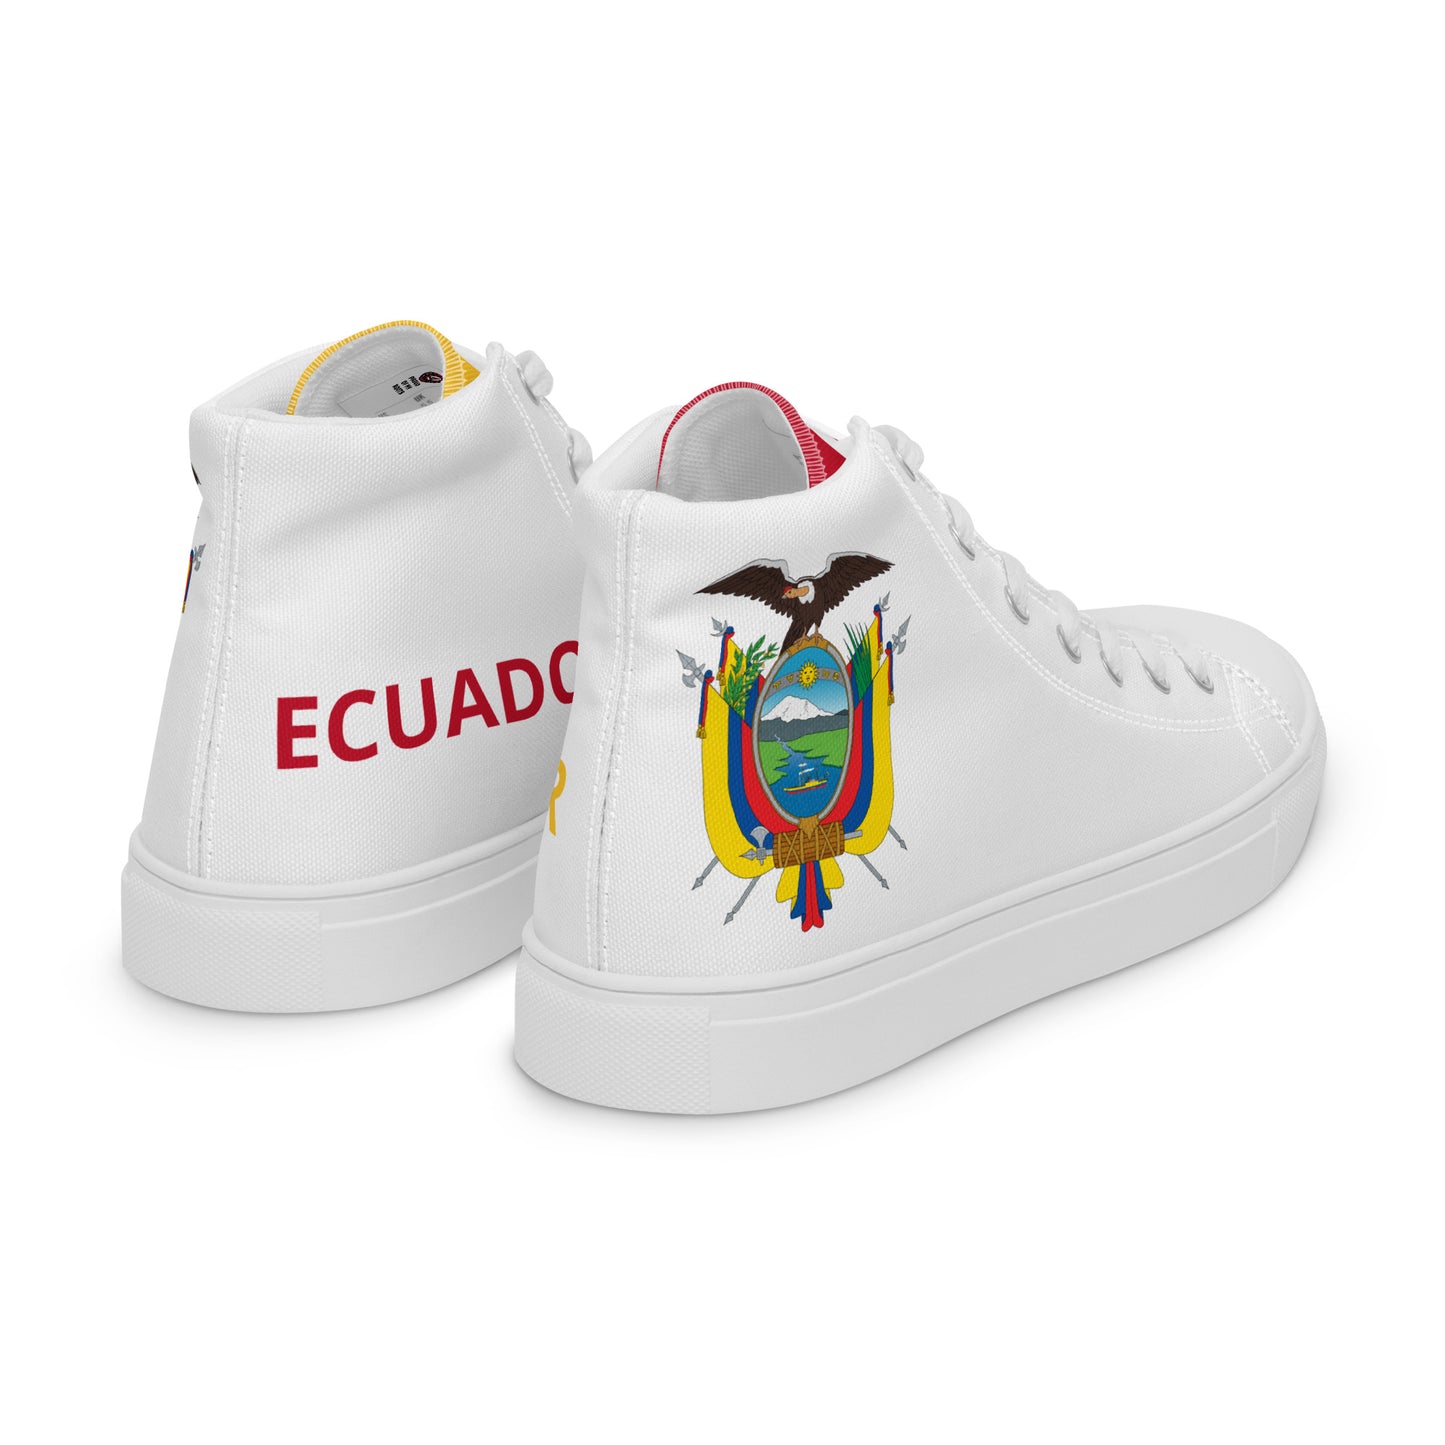 Ecuador - Women - White - High top shoes